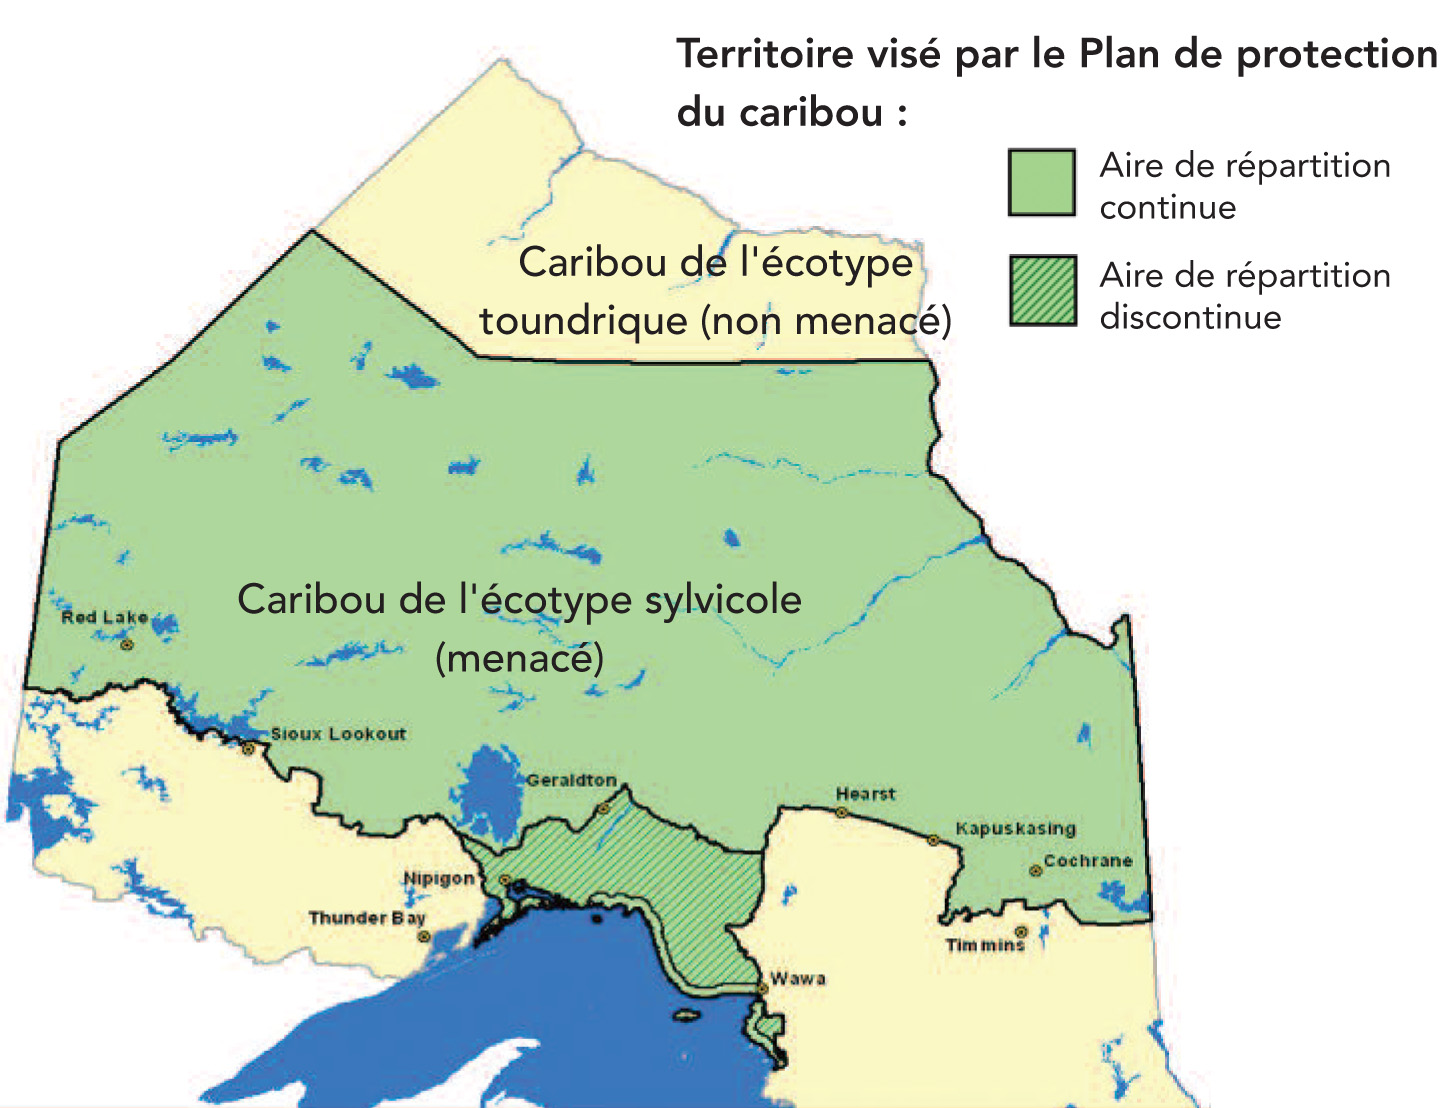 Cette carte du Nord de l'Ontario démontre le territoire visé par le Plan de protection du caribou, incluant les aires de répartition continues et discontinues.